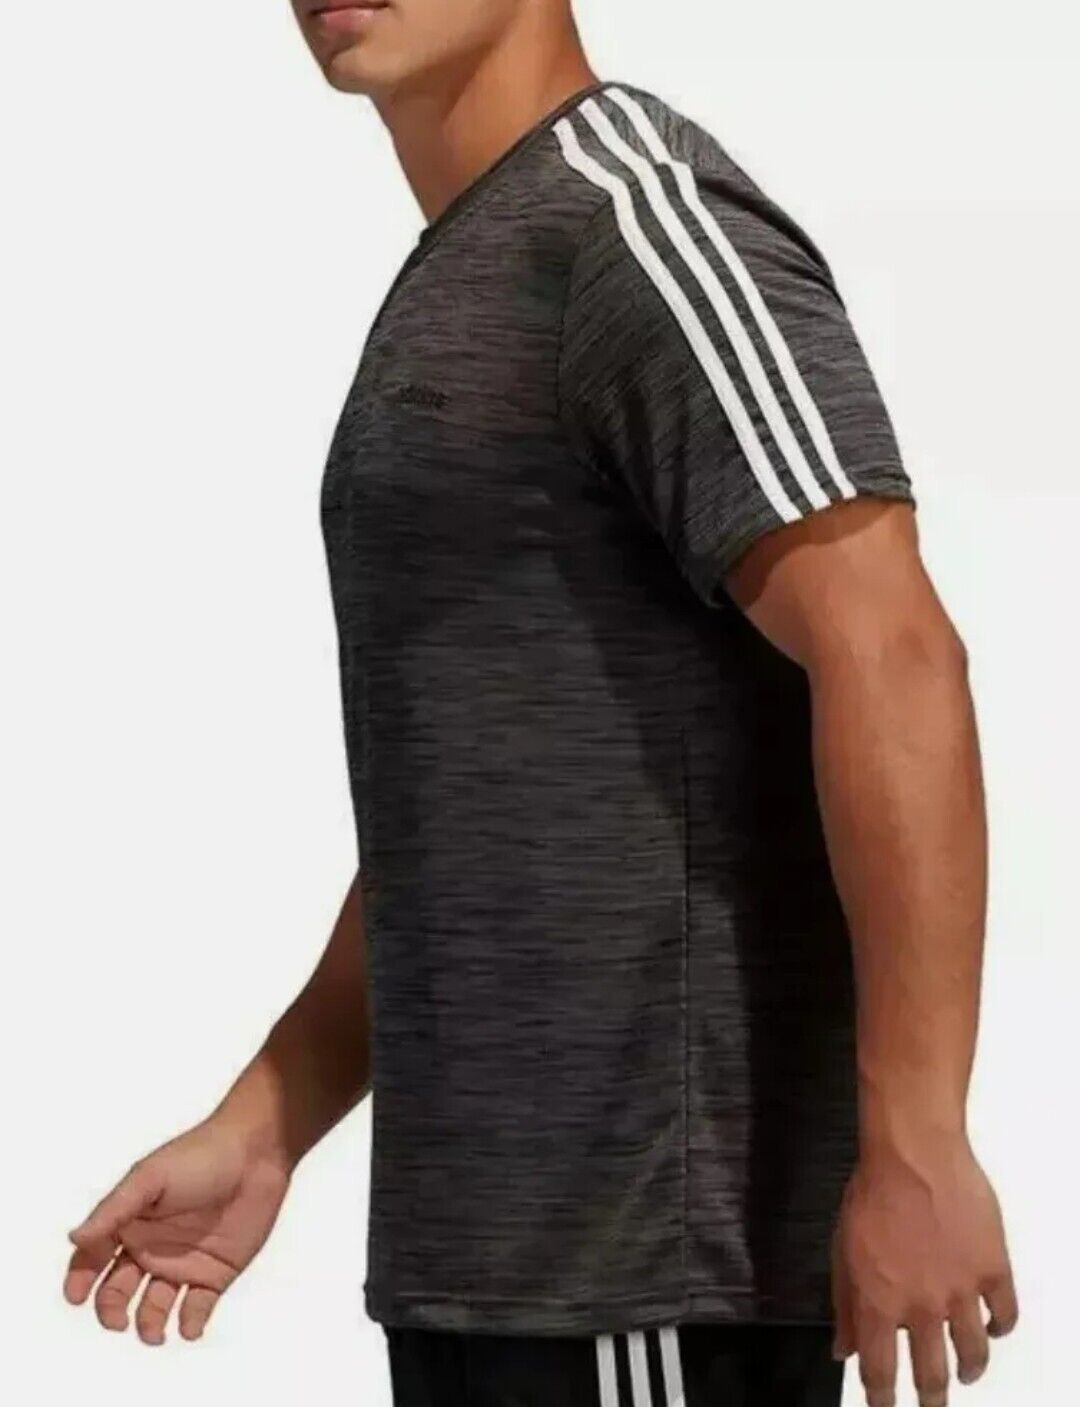 ÁO TSHIRTS CHÍNH HÃNG - Adidas Men's 3 Stripes SS Training T-Shirt - EC1243